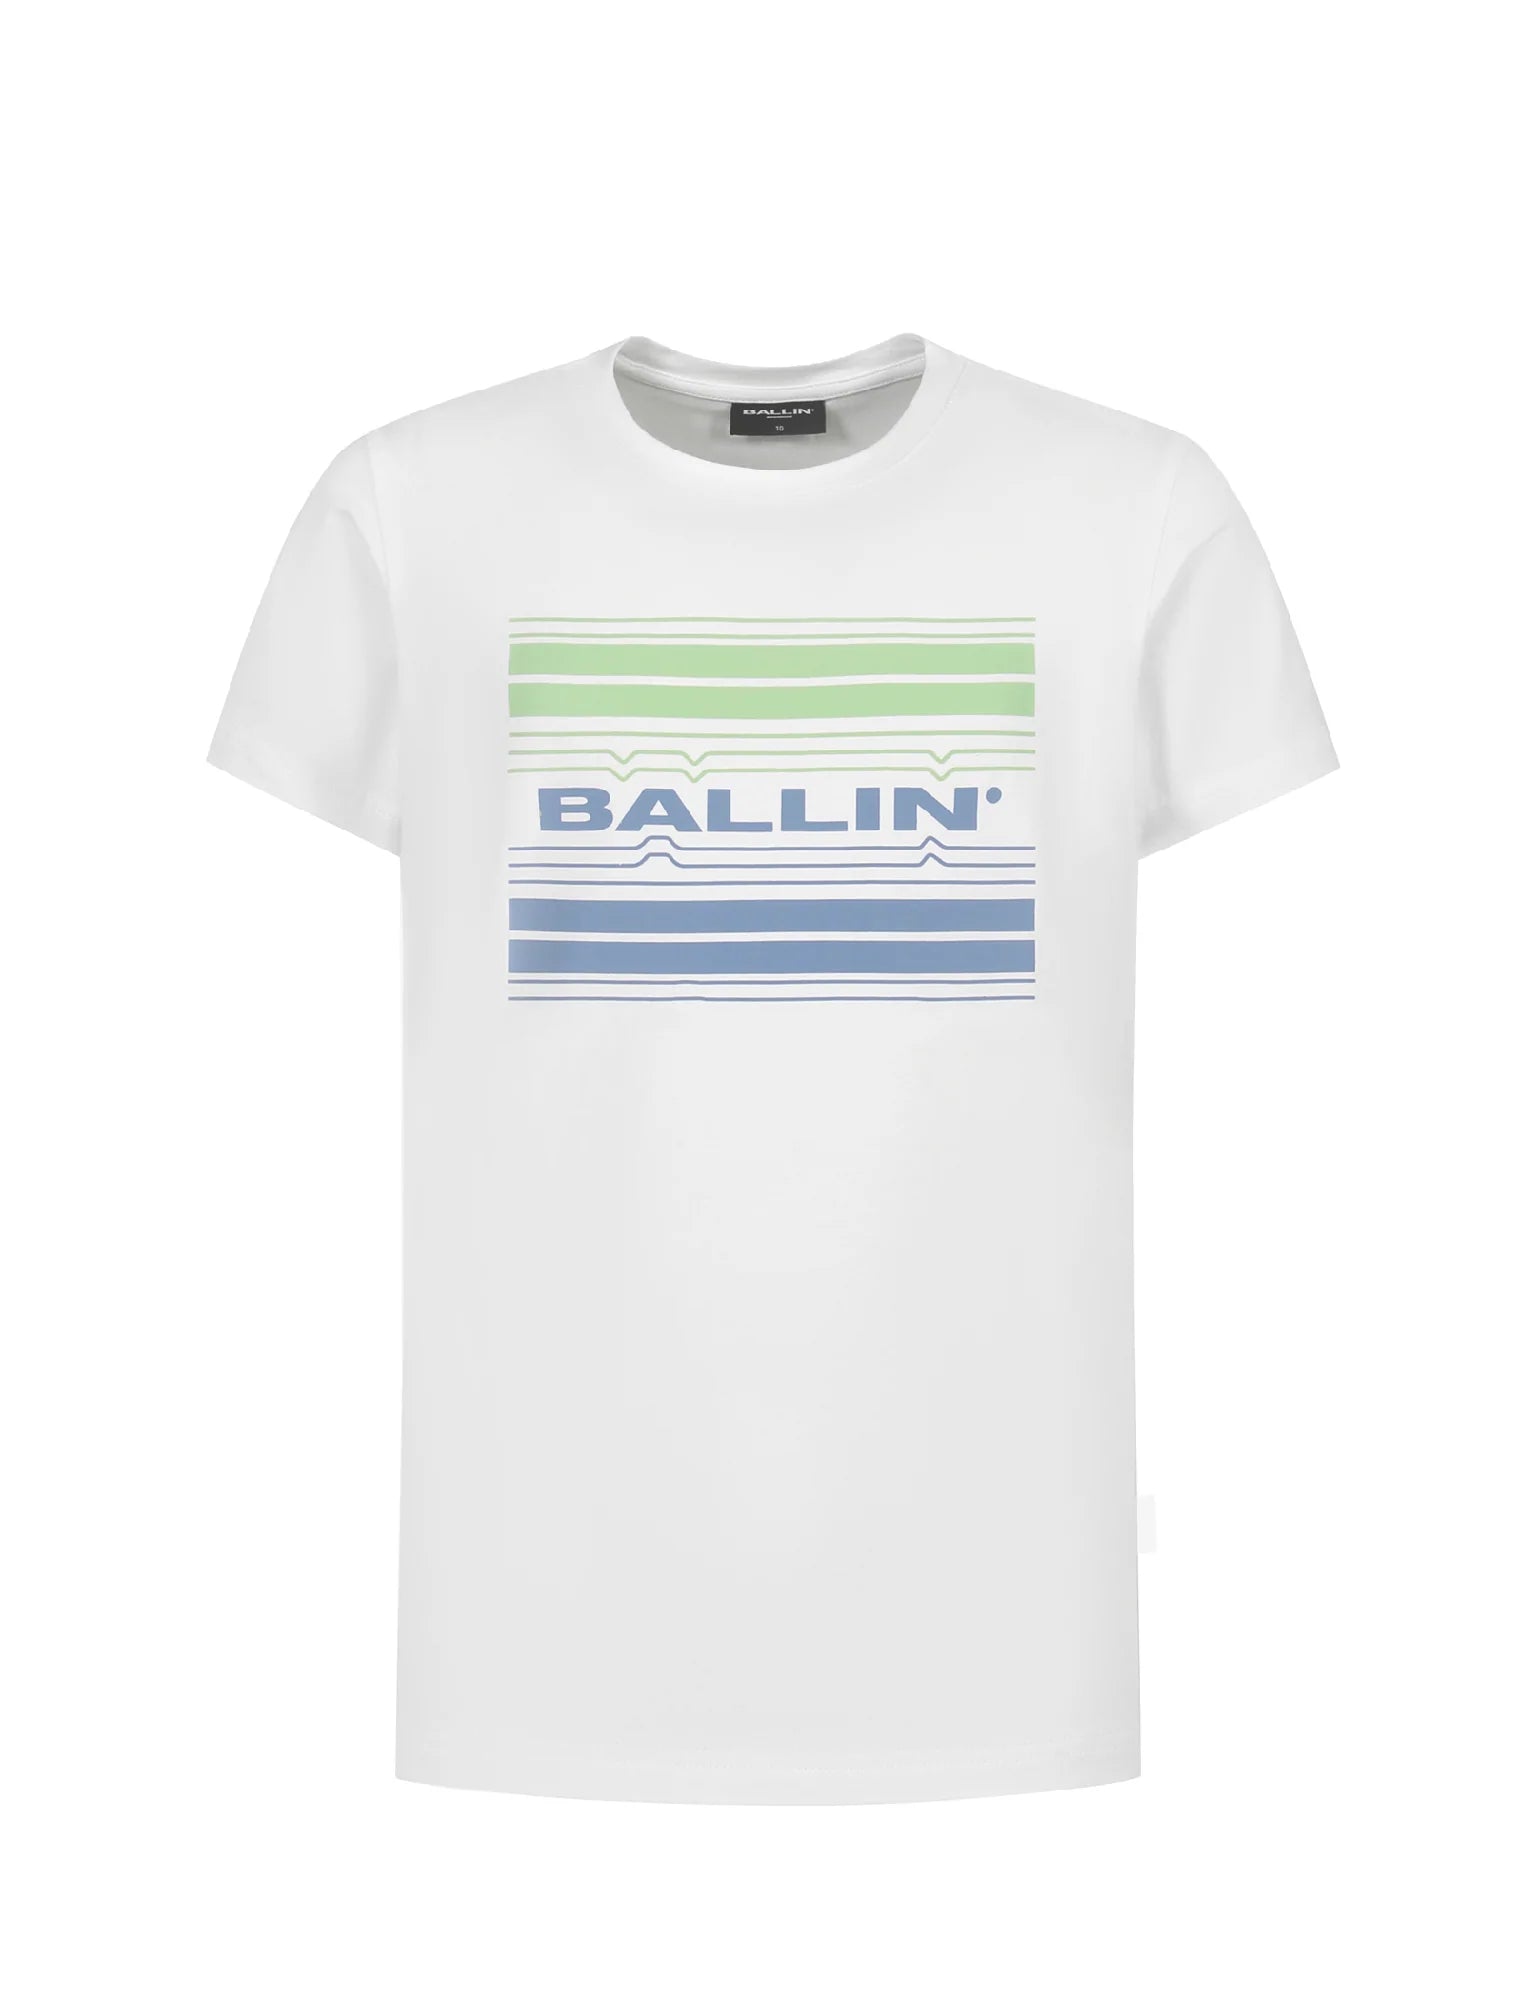 Unisexs T-shirt van Ballin Amsterdam in de kleur White in maat 176.